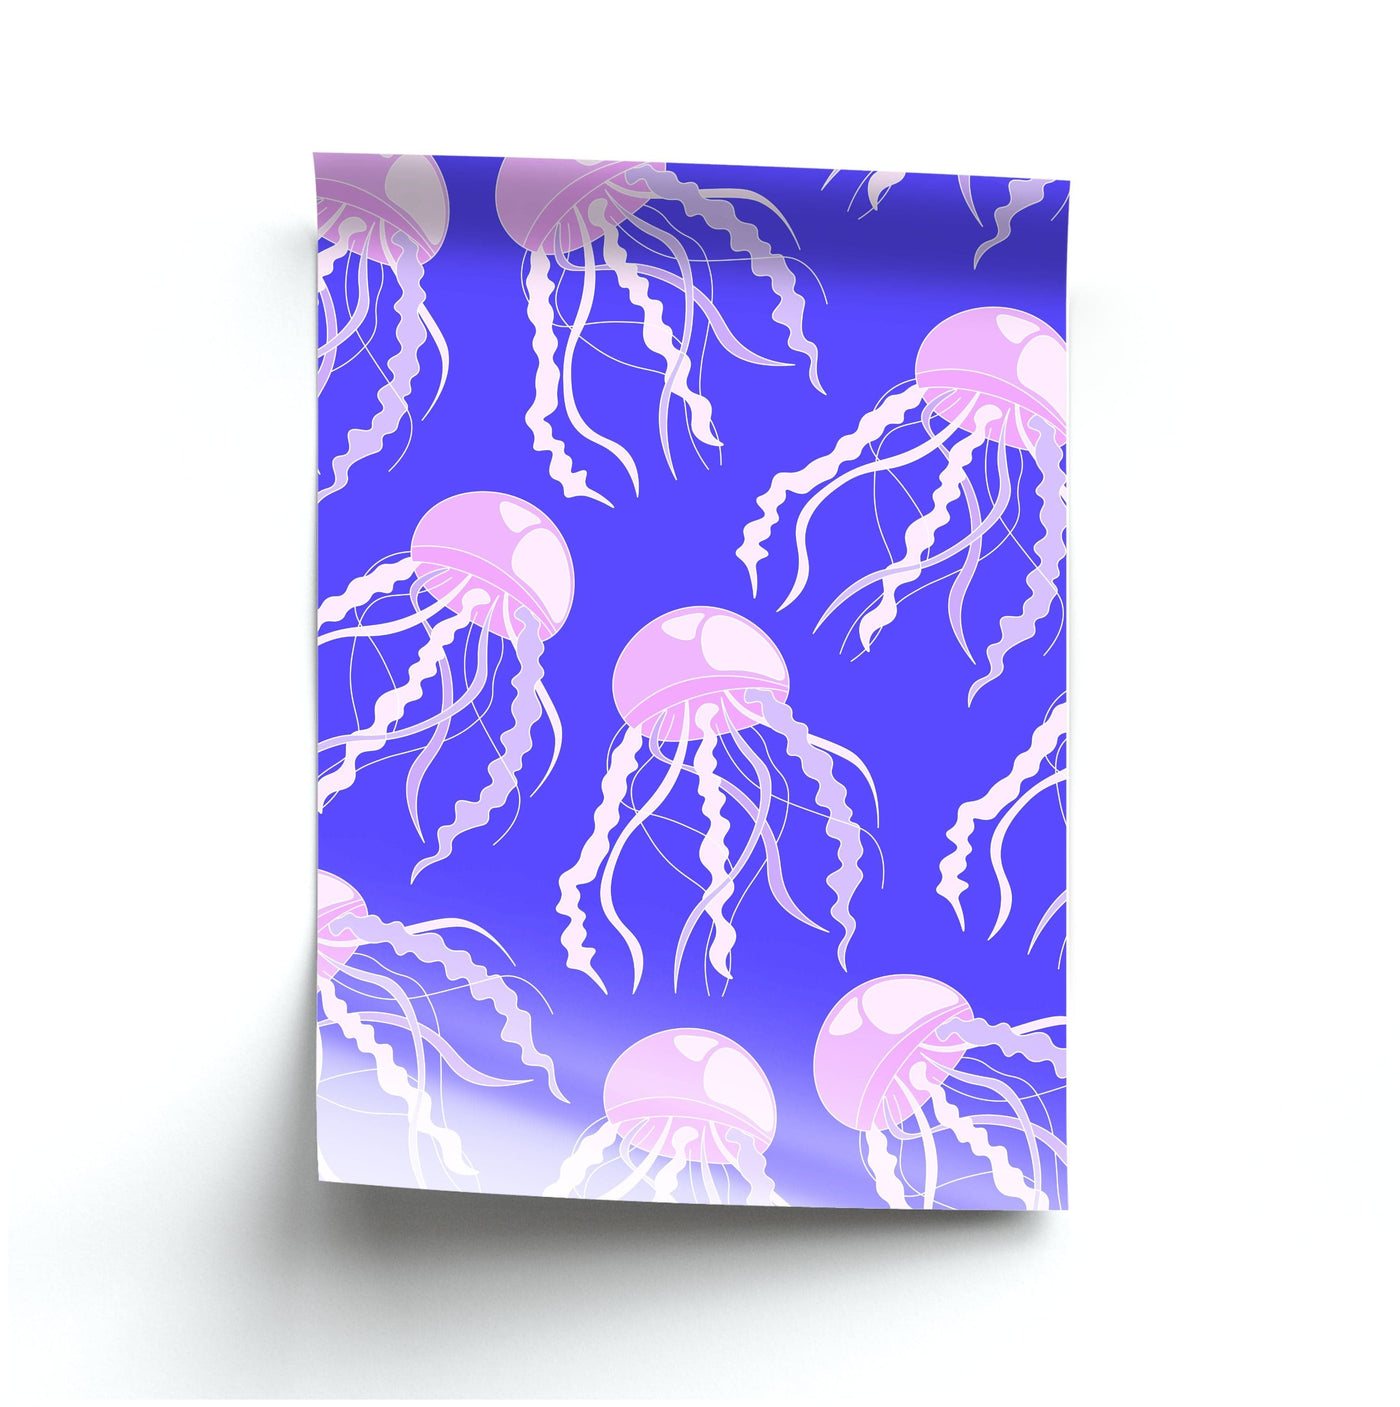 Jellyfish Pattern - Sealife Poster